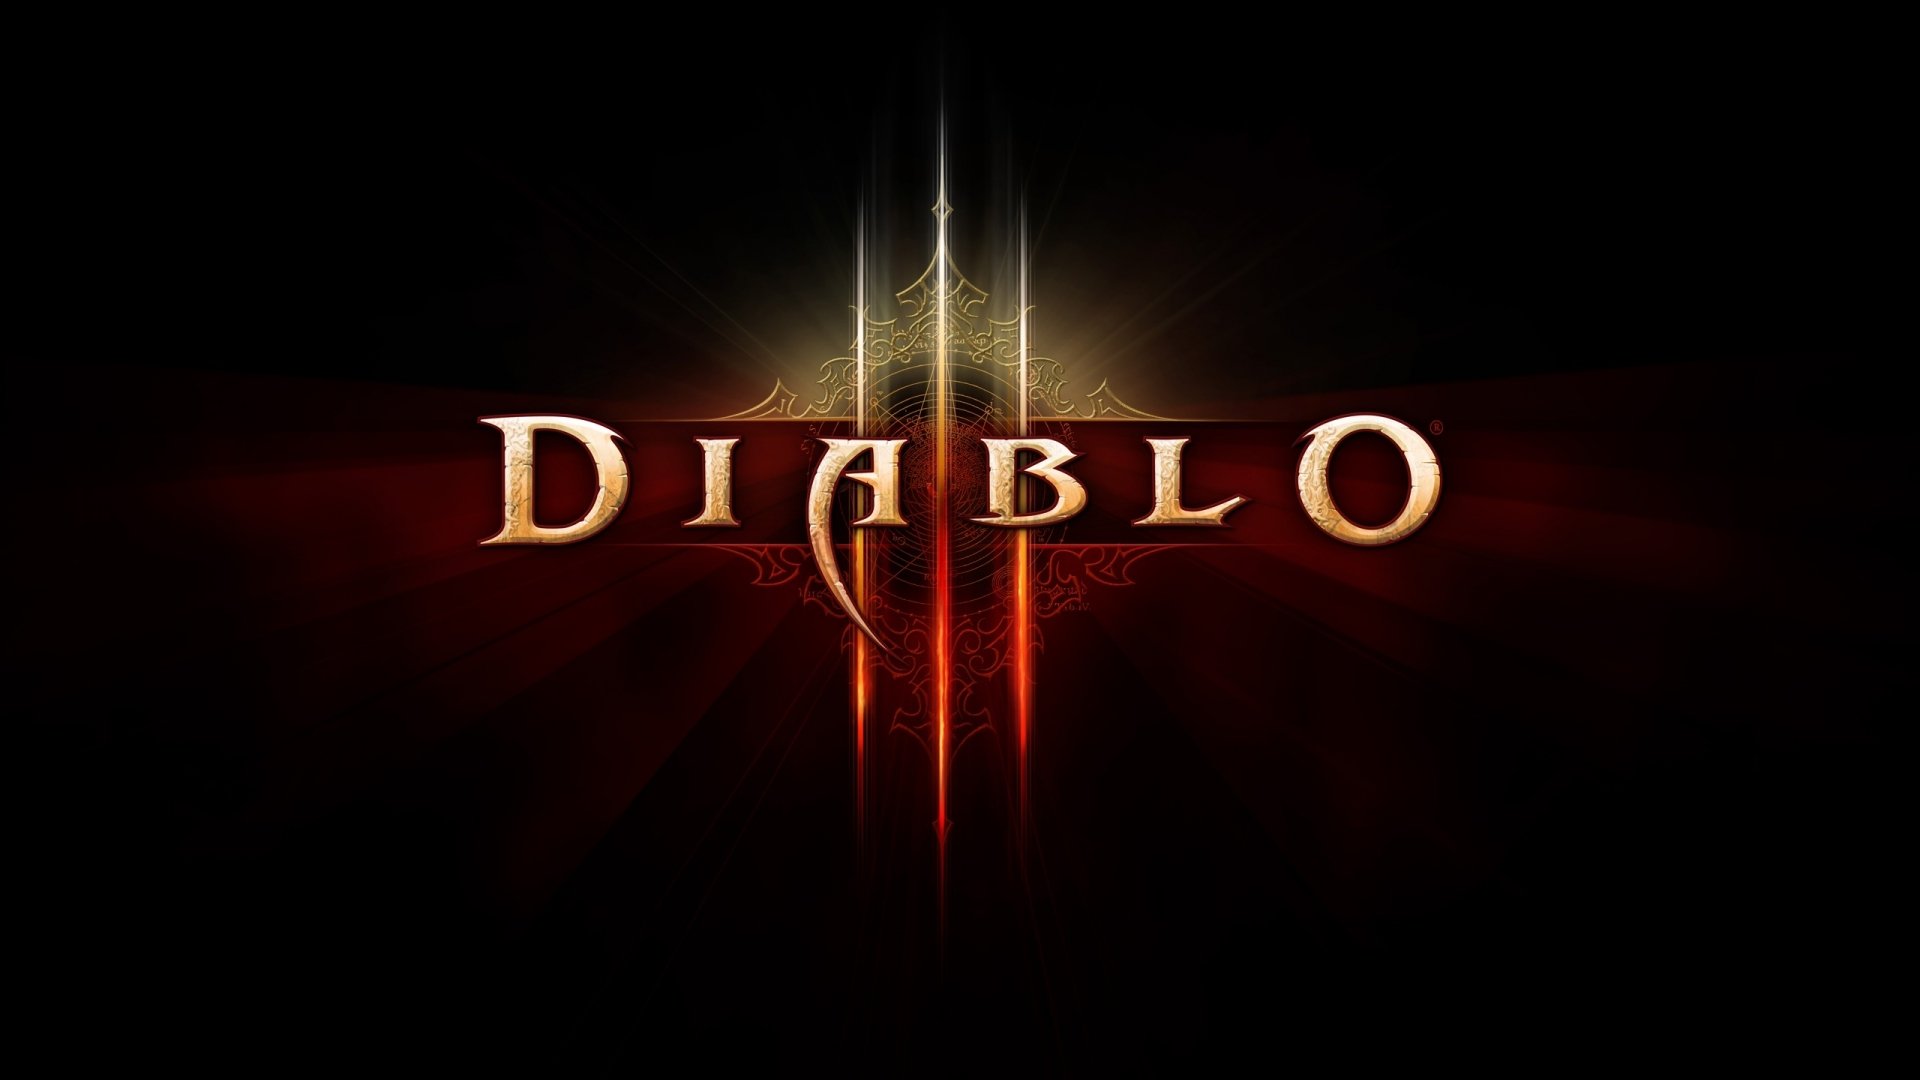 Diablo 3 Logo for 1920 x 1080 HDTV 1080p resolution